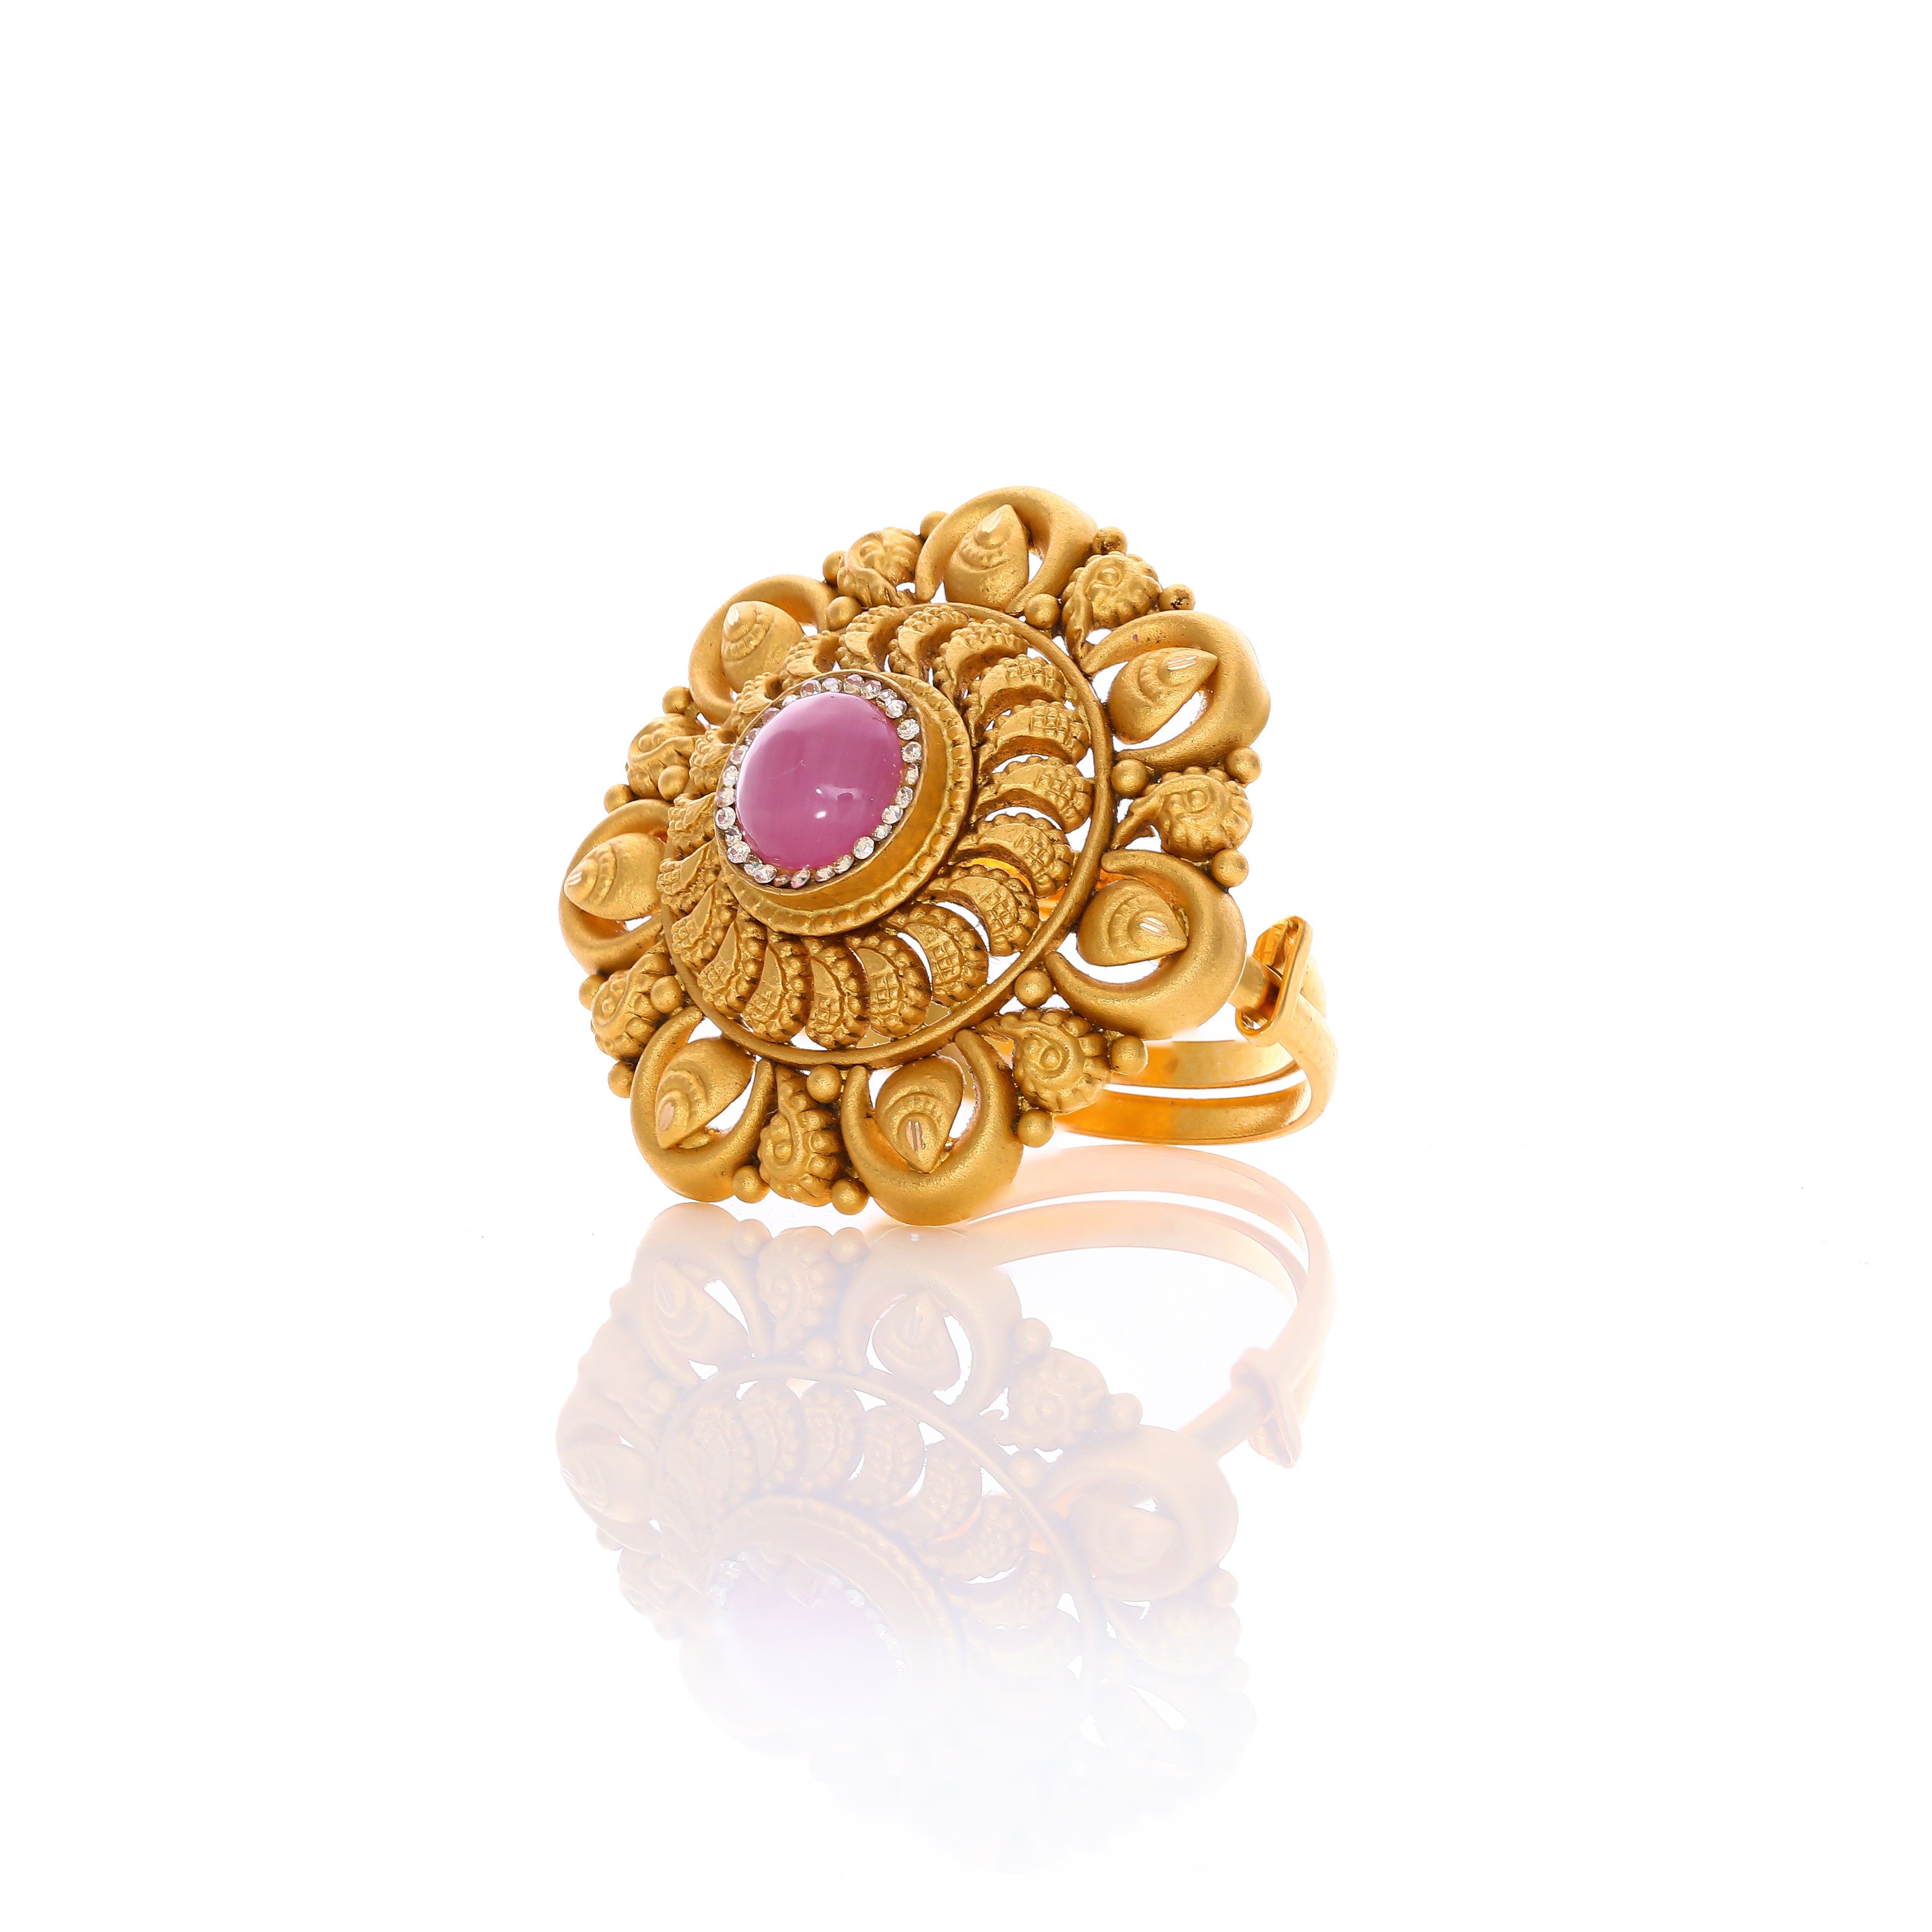 Parisa Gold Ring